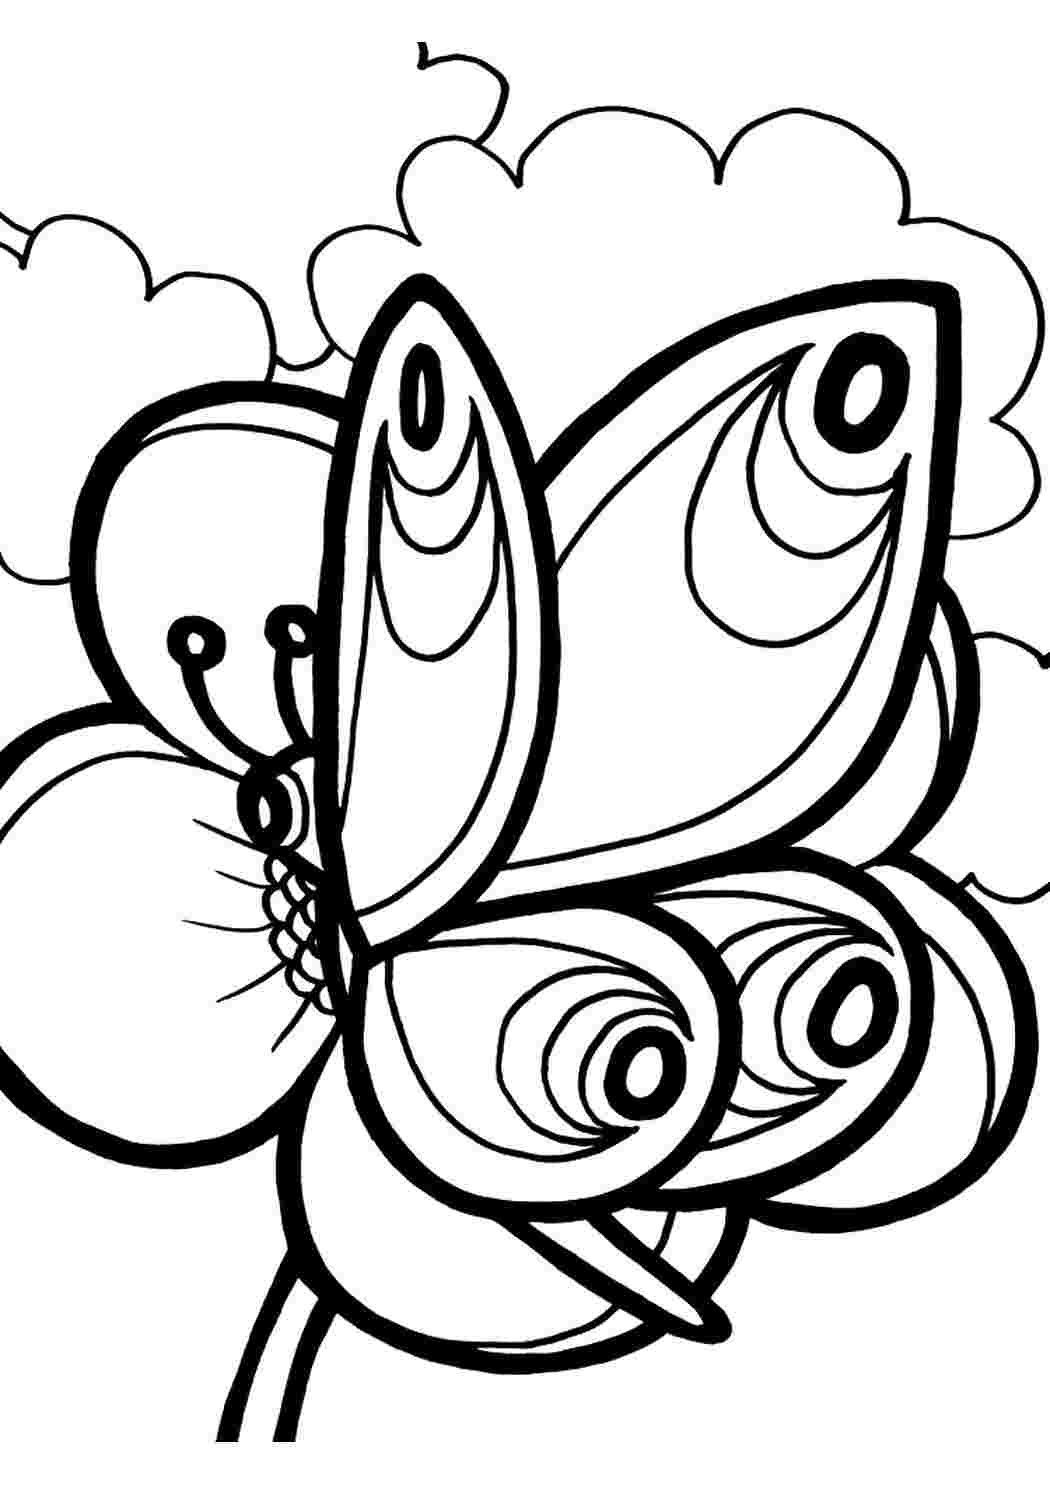 Раскраски Раскраски бабочки онлайн для мальчиков и девочек. Печатать раскарску. Раскраски бабочки онлайн для мальчиков и девочек. Лучшие раскраски.